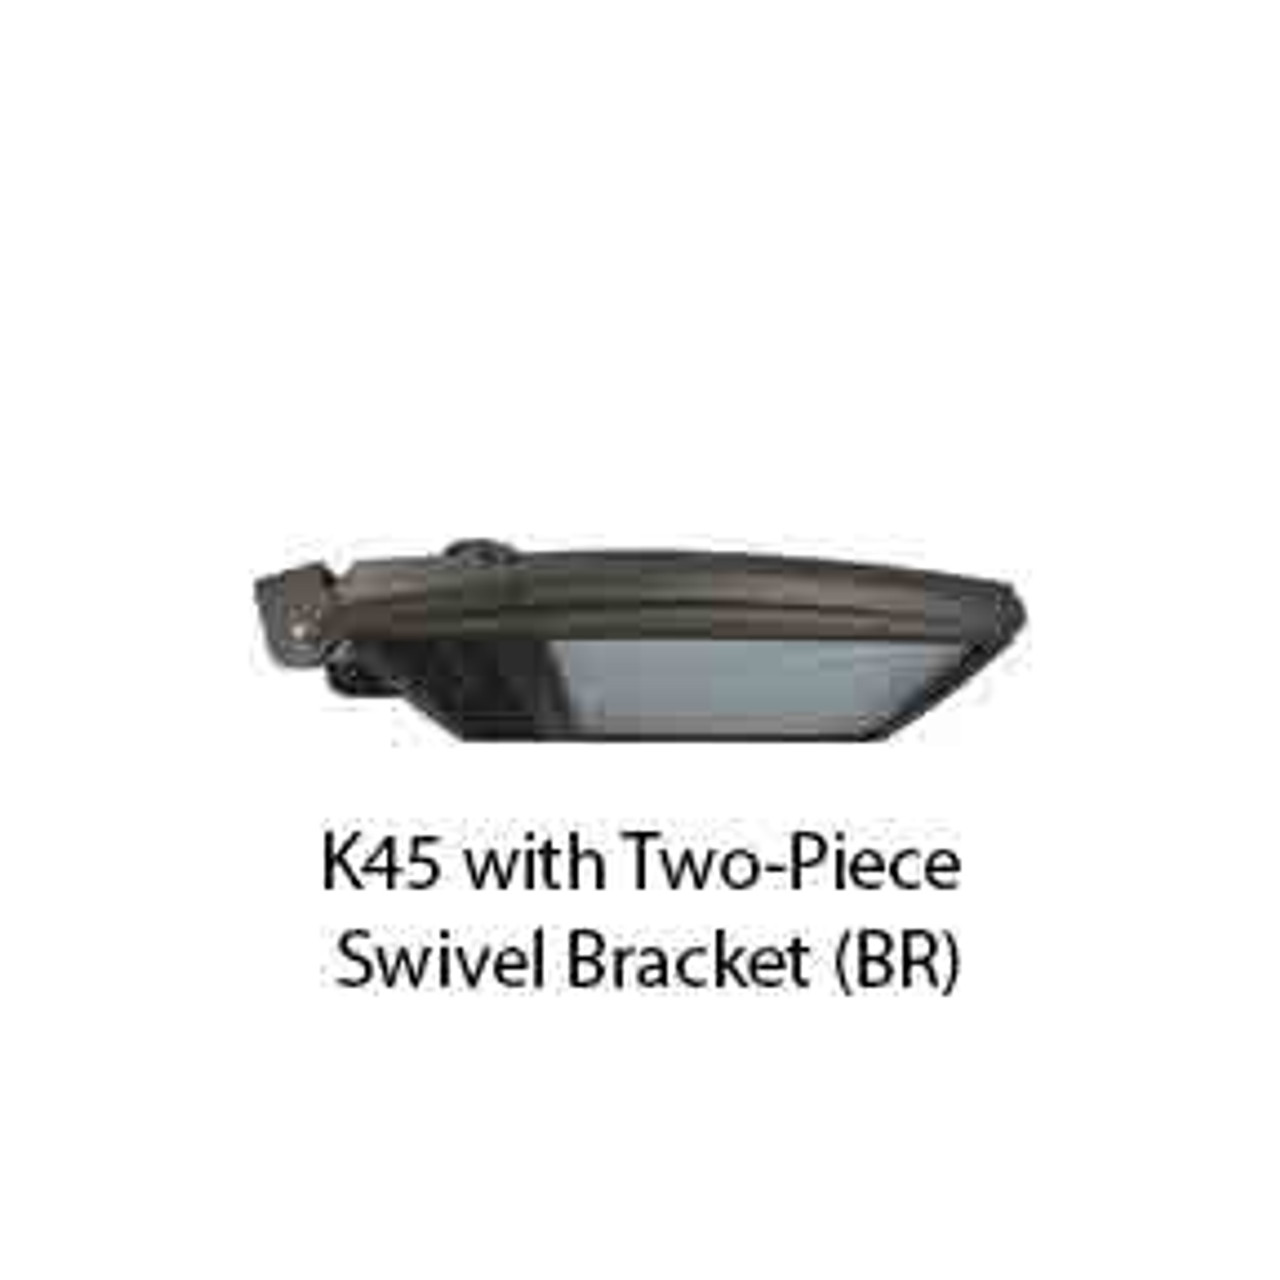 K45 with Two-Piece Swivel Bracket (BR)